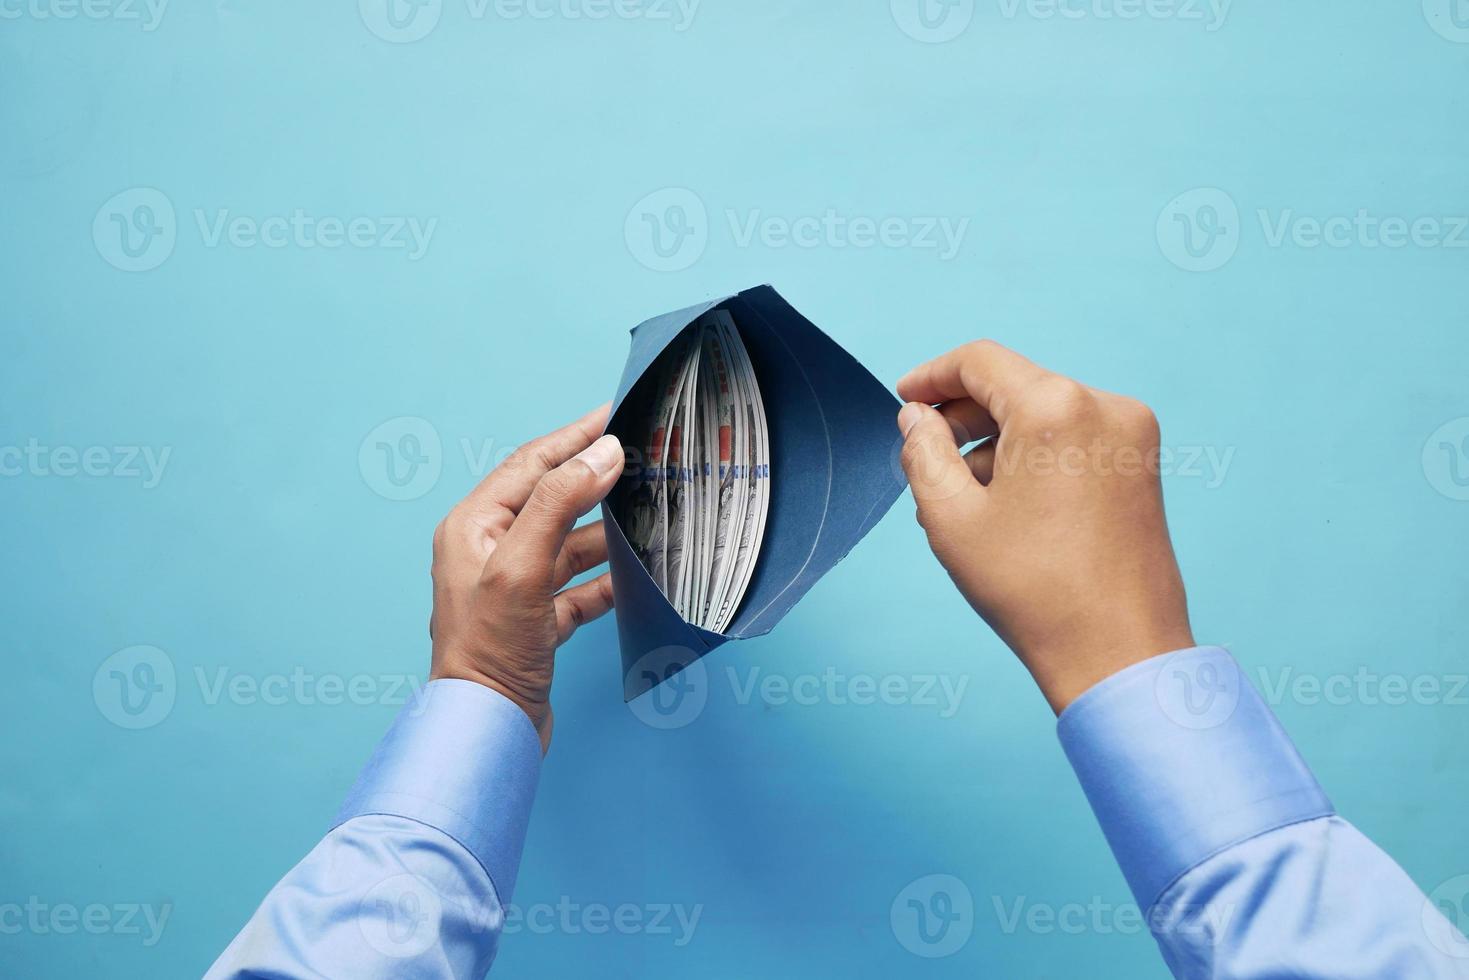 Personenhand, die Bargeld in einen Umschlag steckt. foto